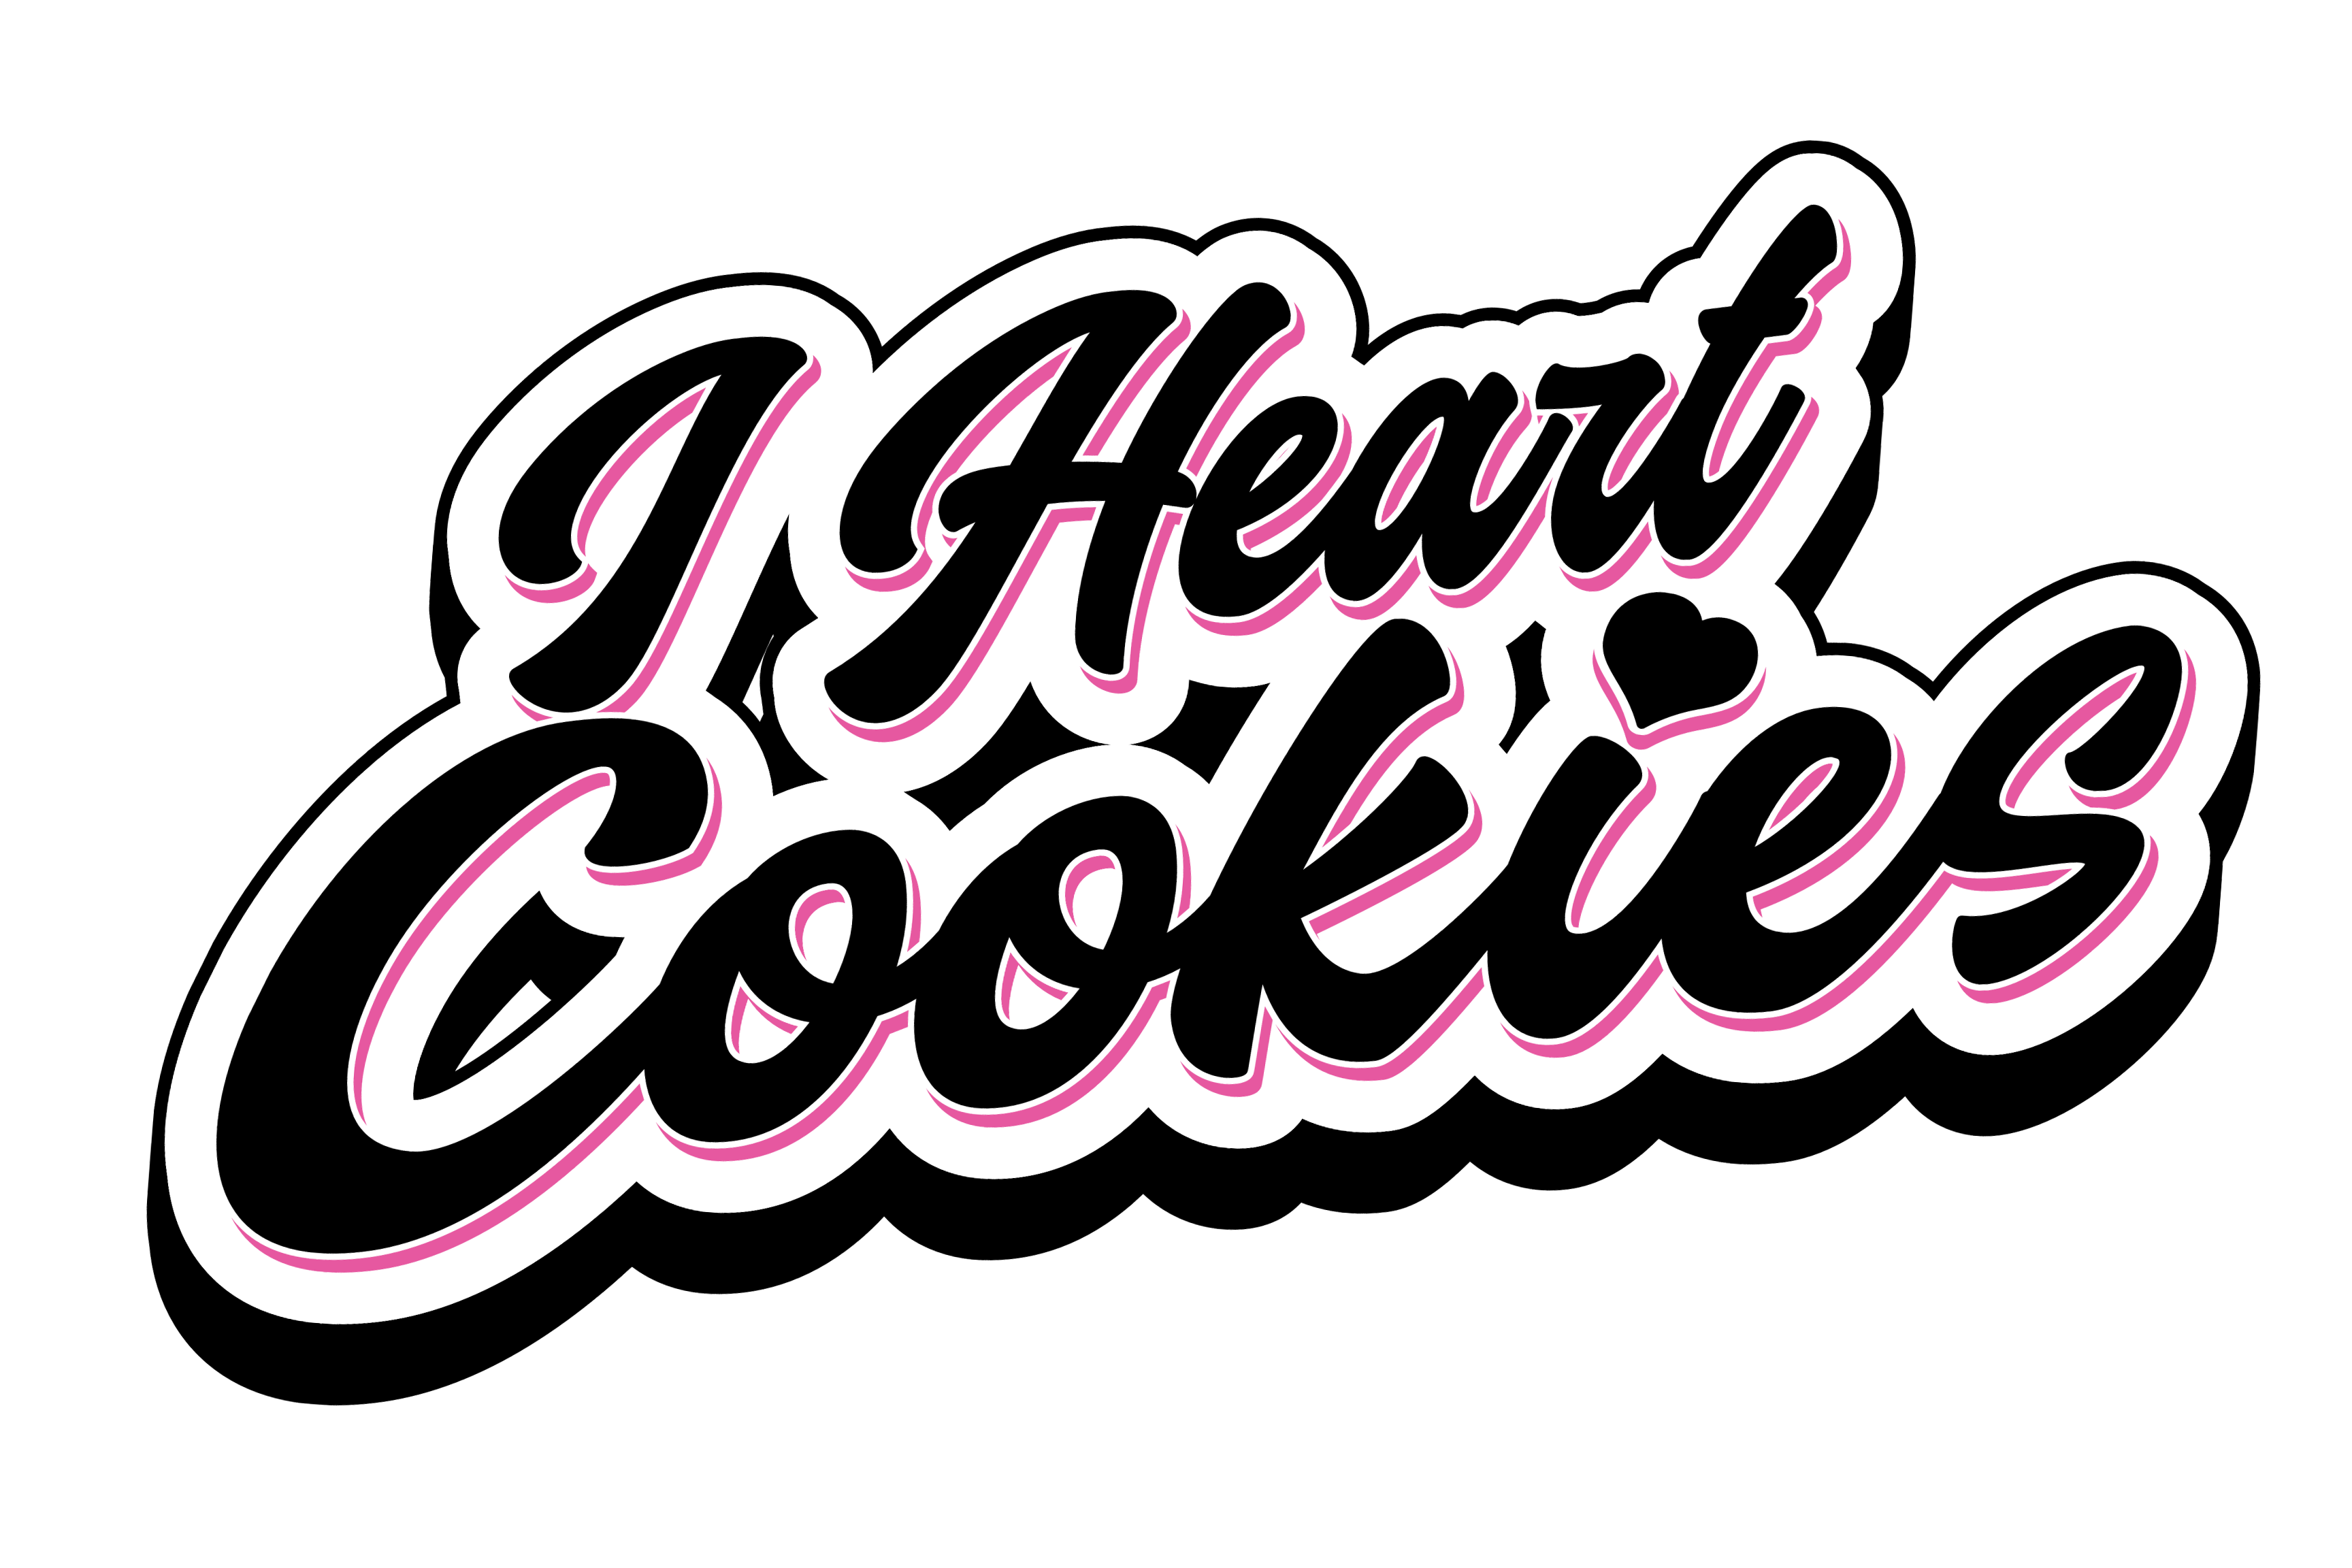 Crumbl Cookies Trademarks - Gerben IP